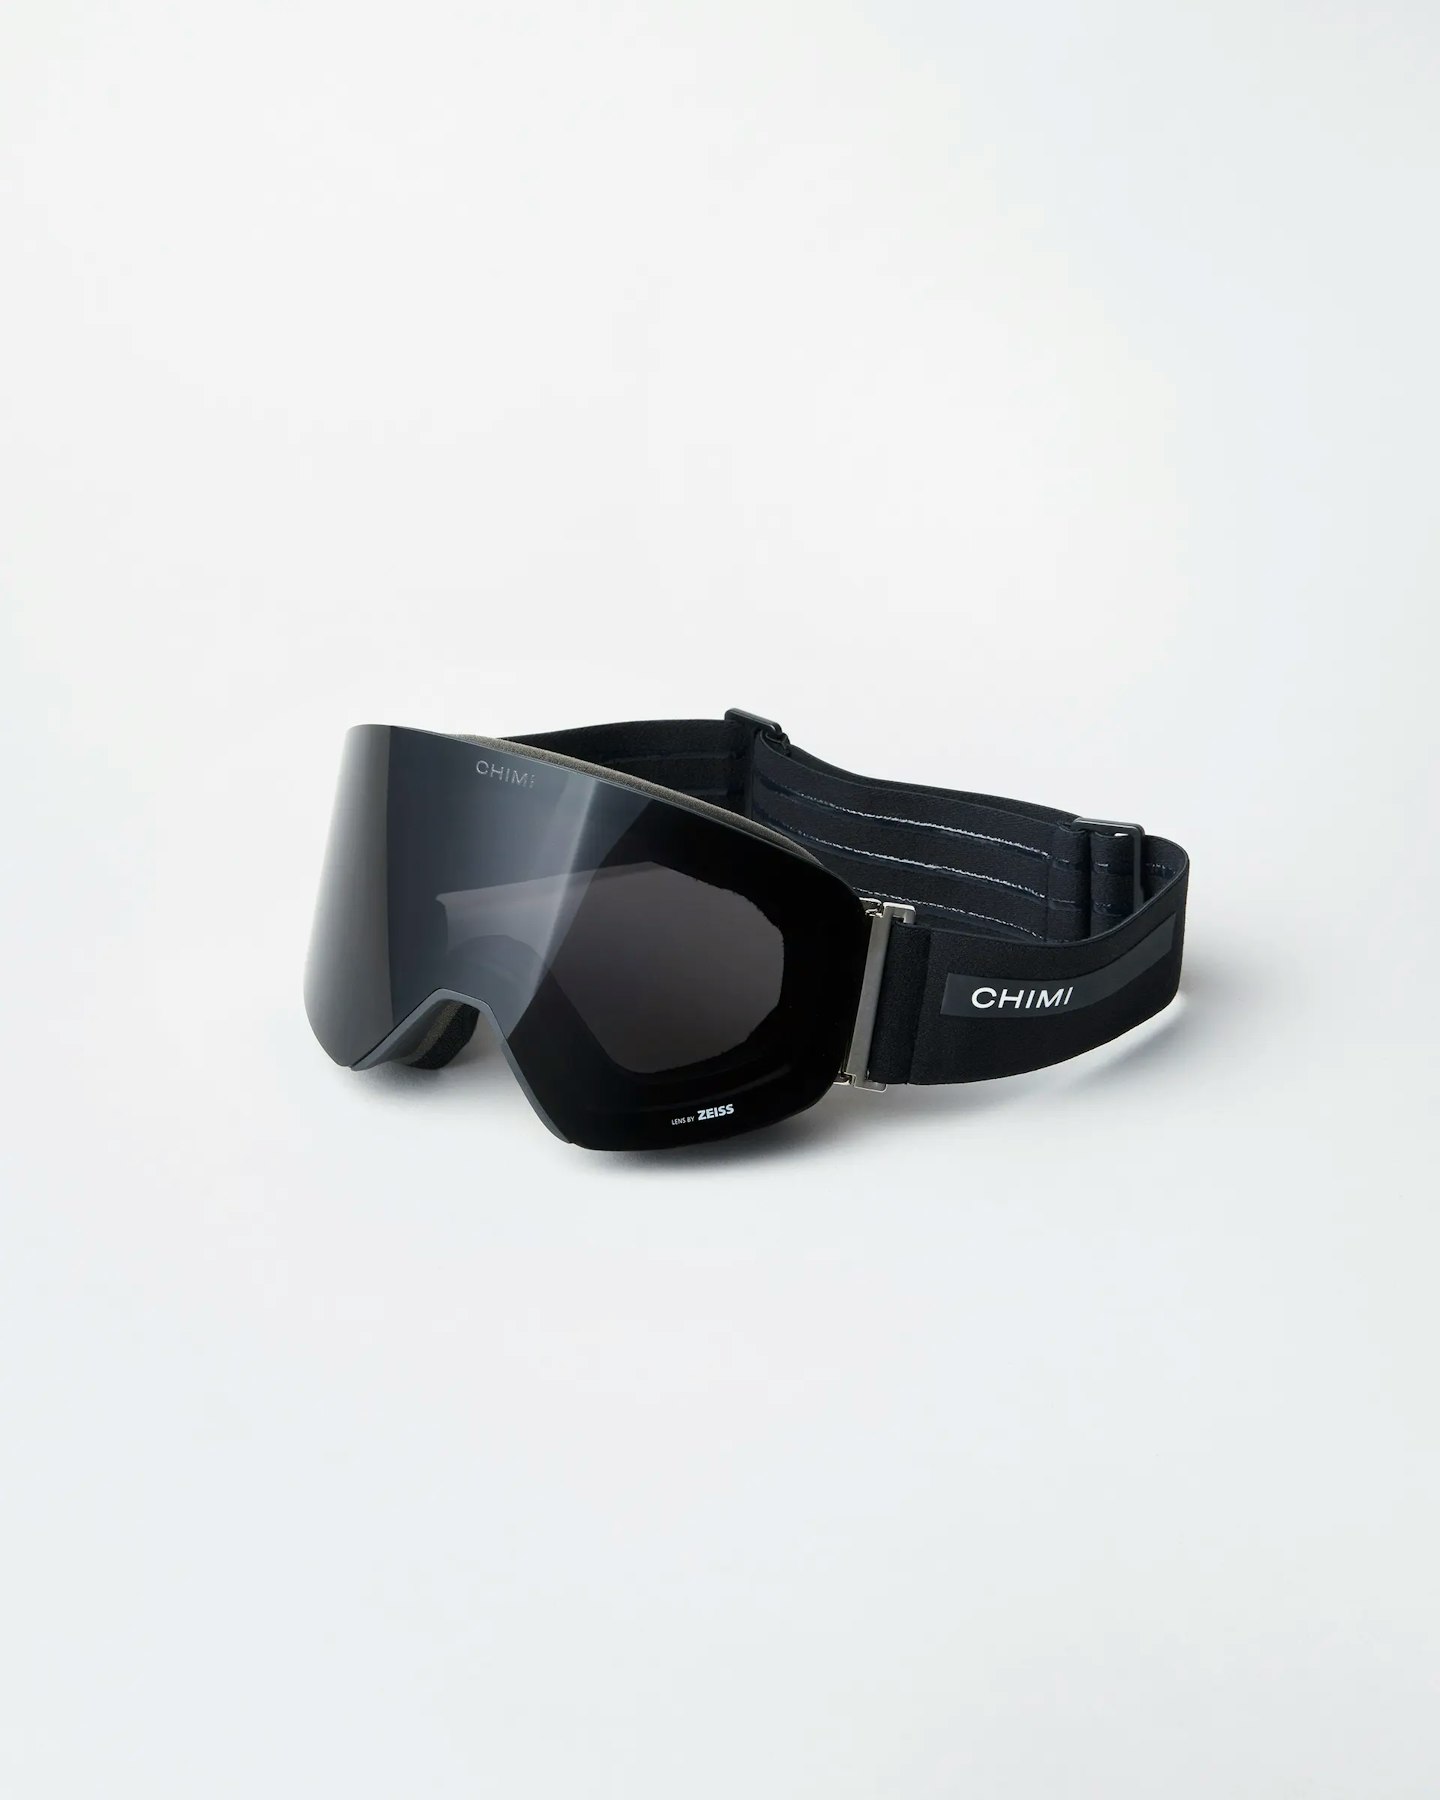 CHIMI, Ski Goggles 02 Black, £200